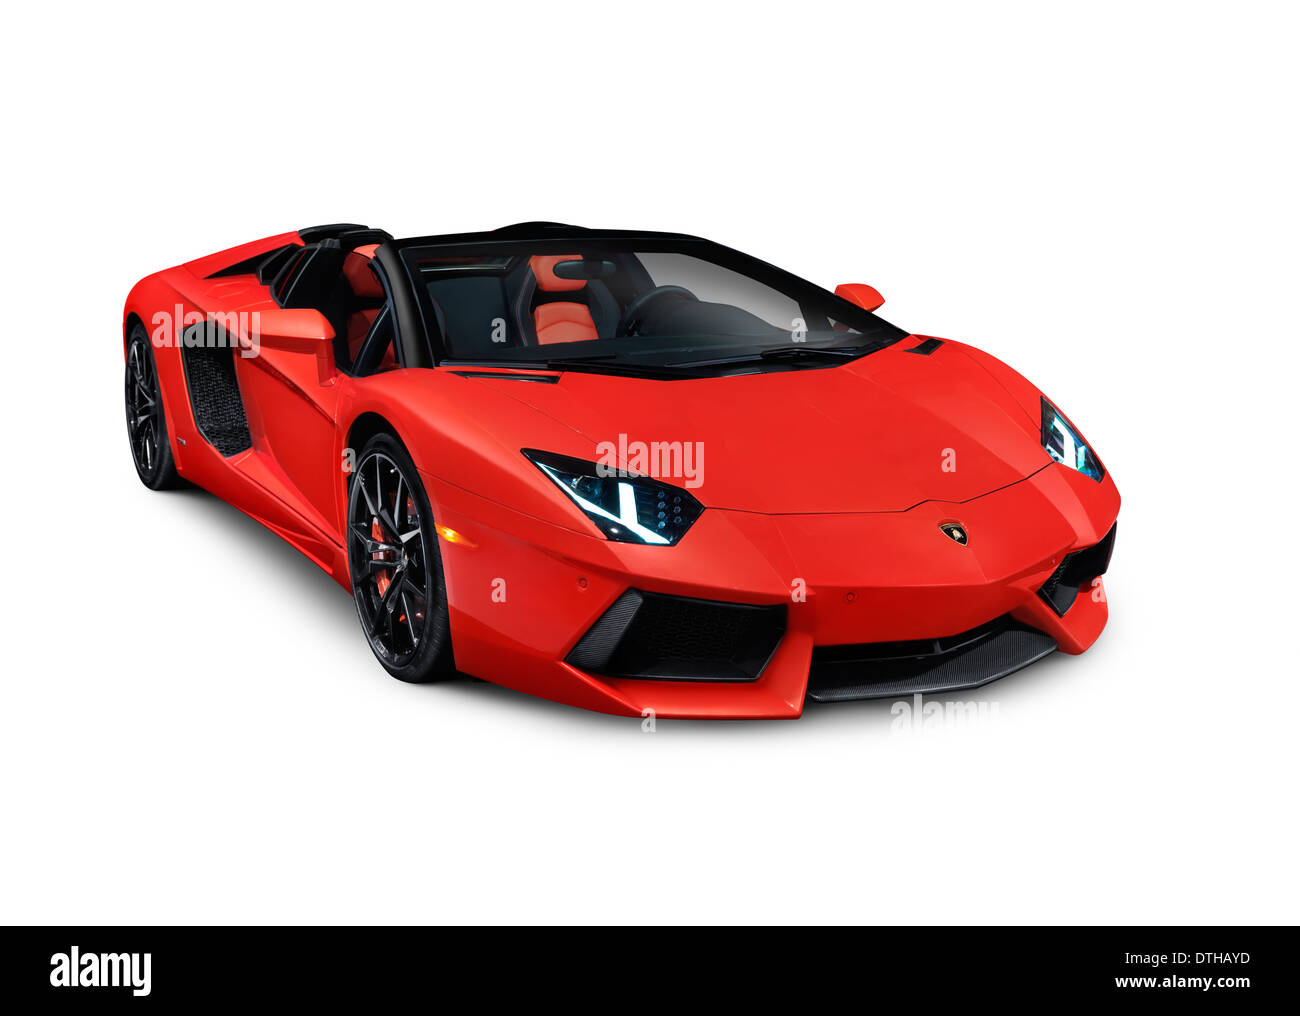 Licencia e impresiones en MaximImages.com - Lamborghini coche deportivo de lujo, supercoche, automotor foto de archivo. Foto de stock